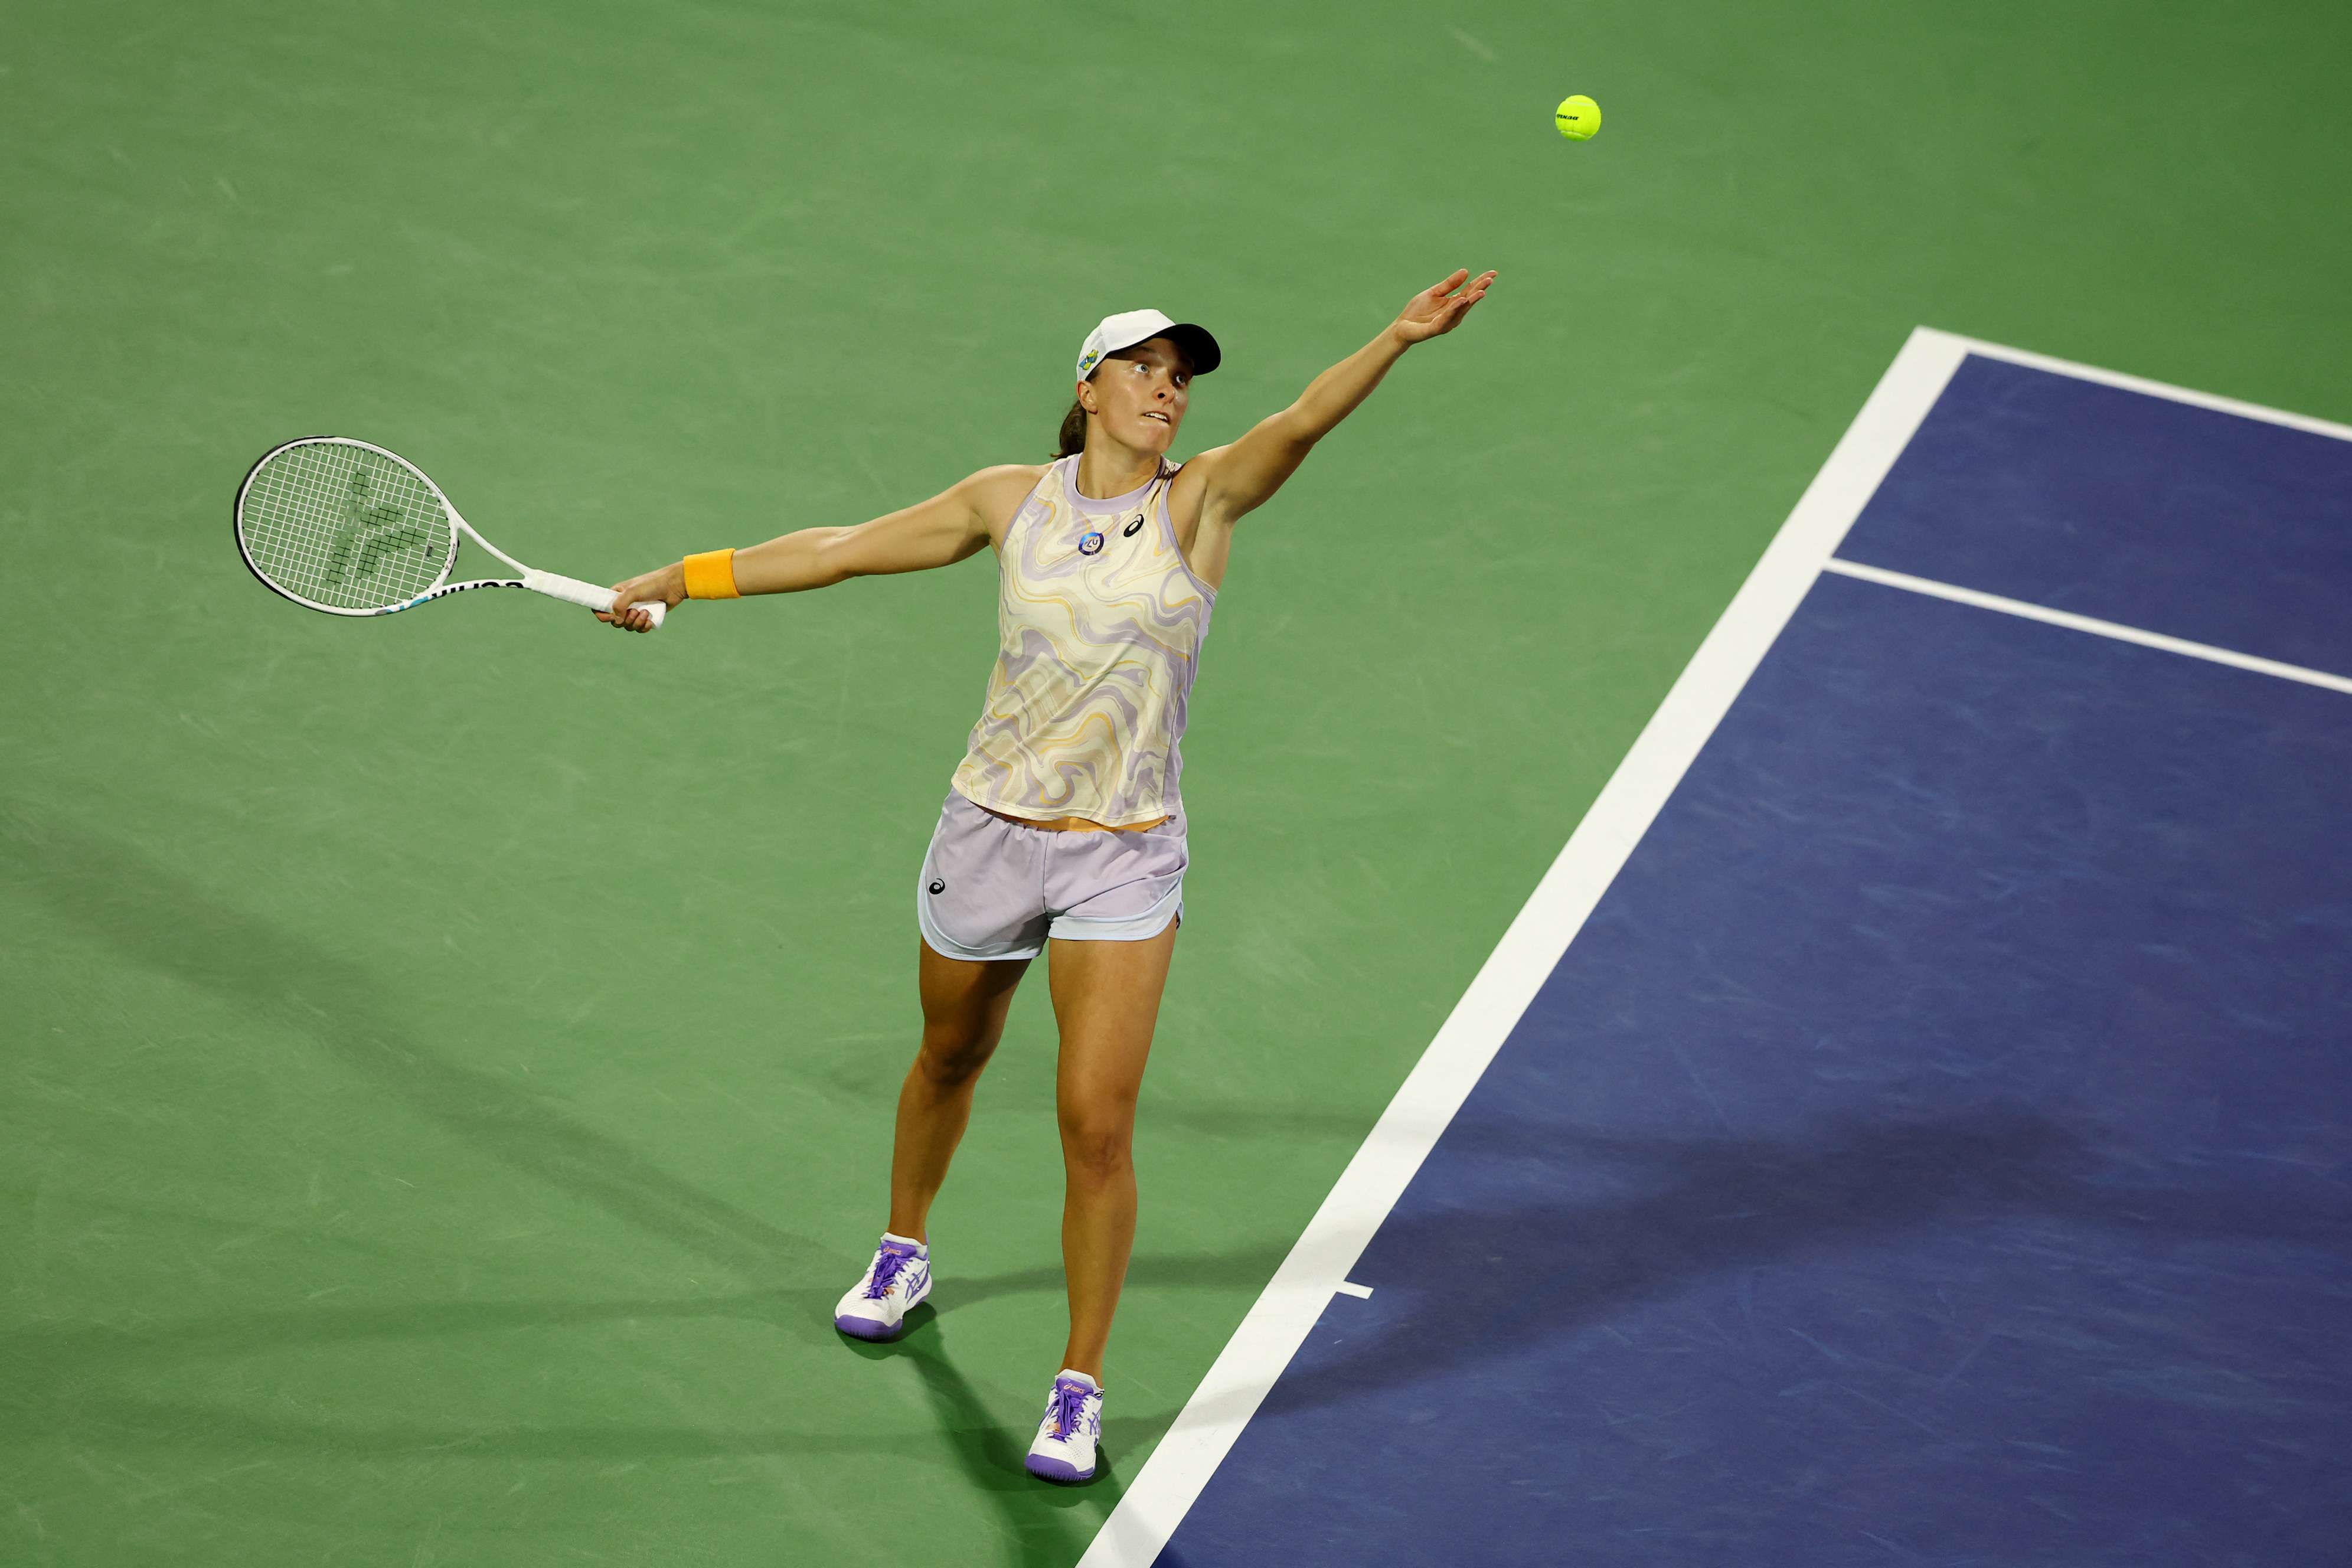 No. 1 Swiatek upset by Krejcikova in Dubai final - NBC Sports